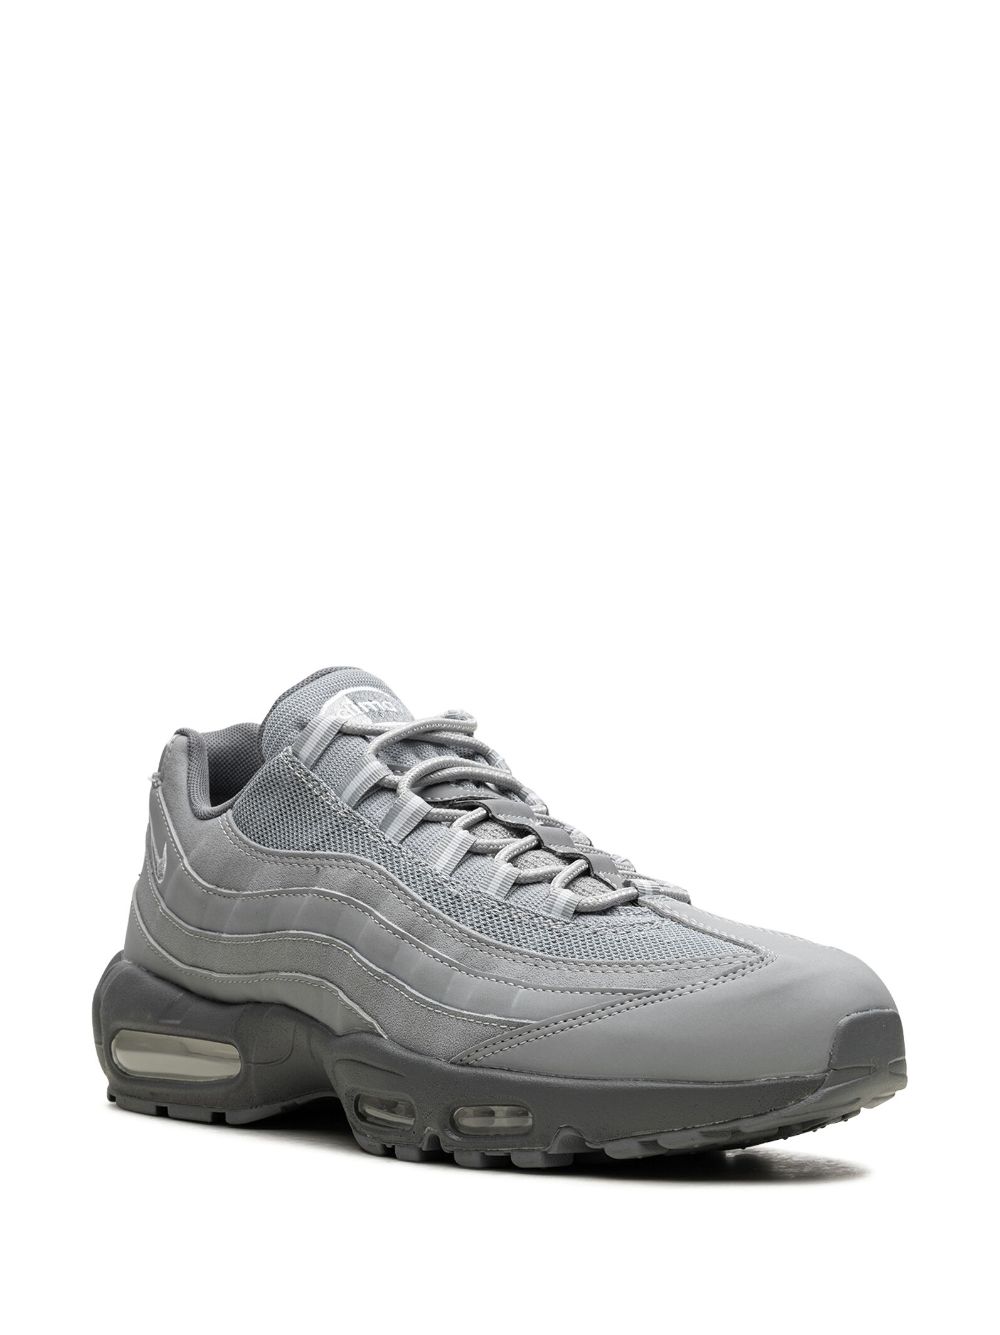 Shop Nike Air Max 95 "triple Grey" Sneakers